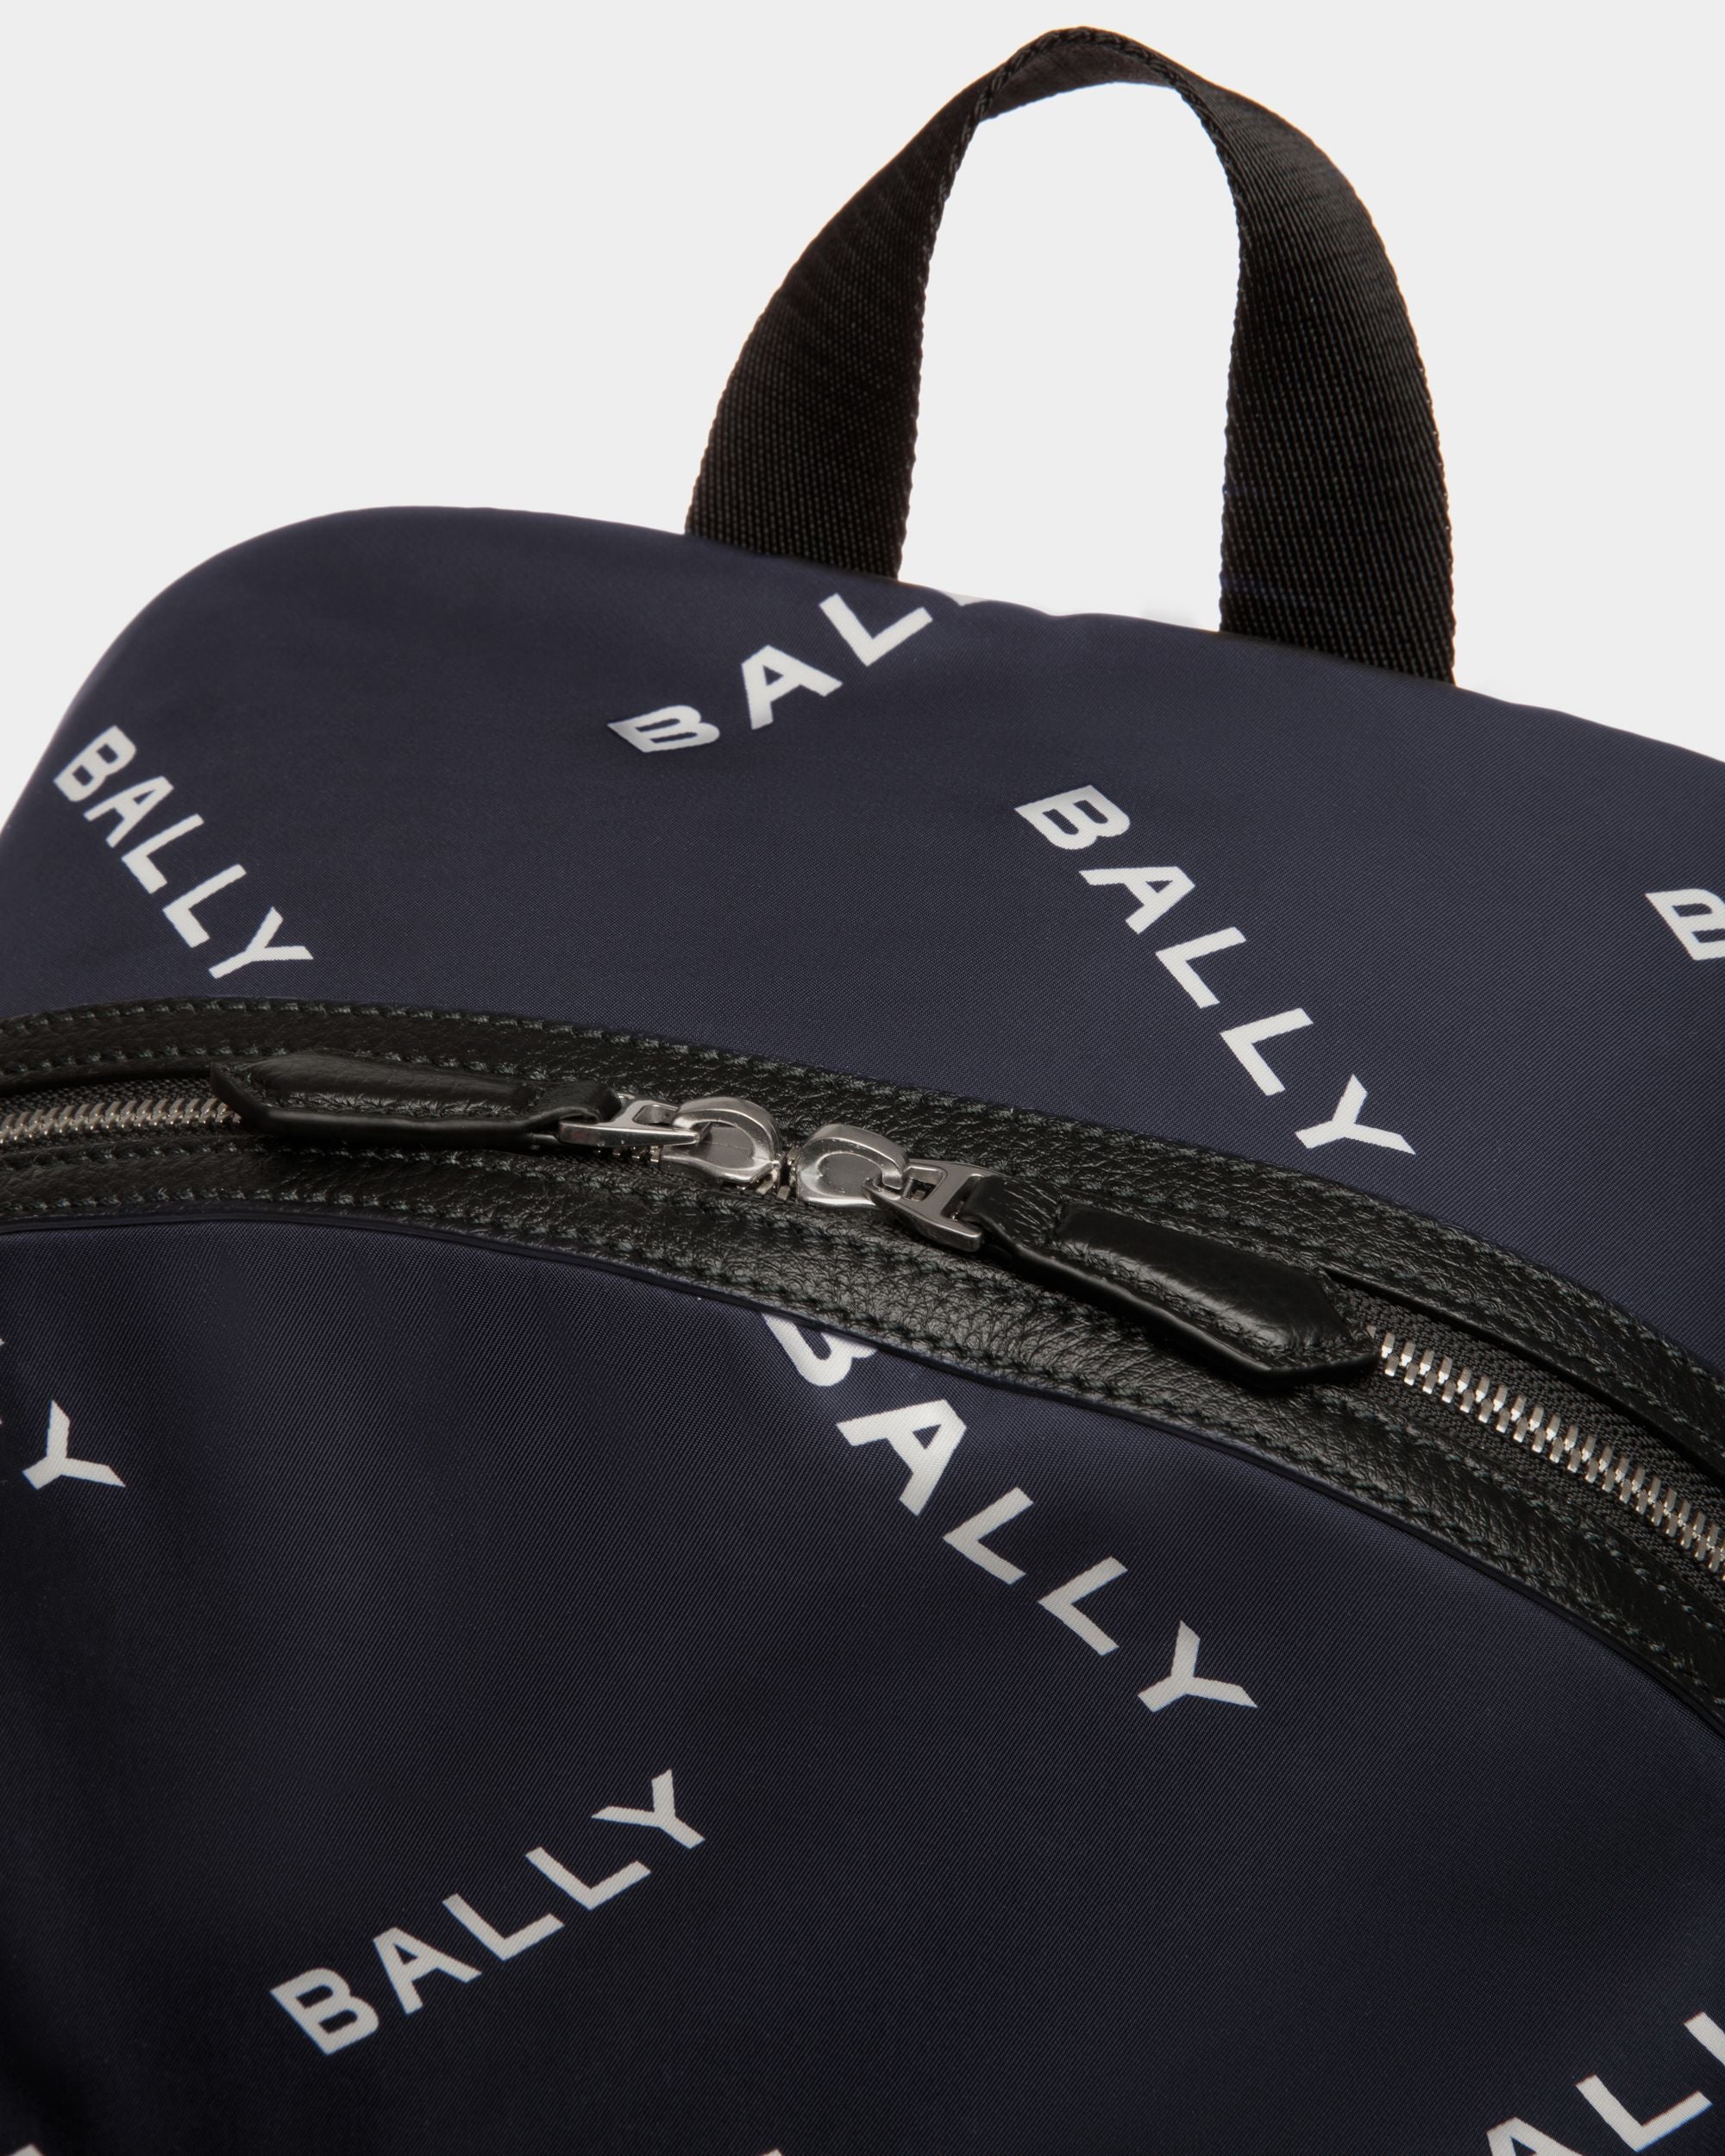 Code | Men's Backpack in Blue Printed Nylon | Bally | Still Life Detail